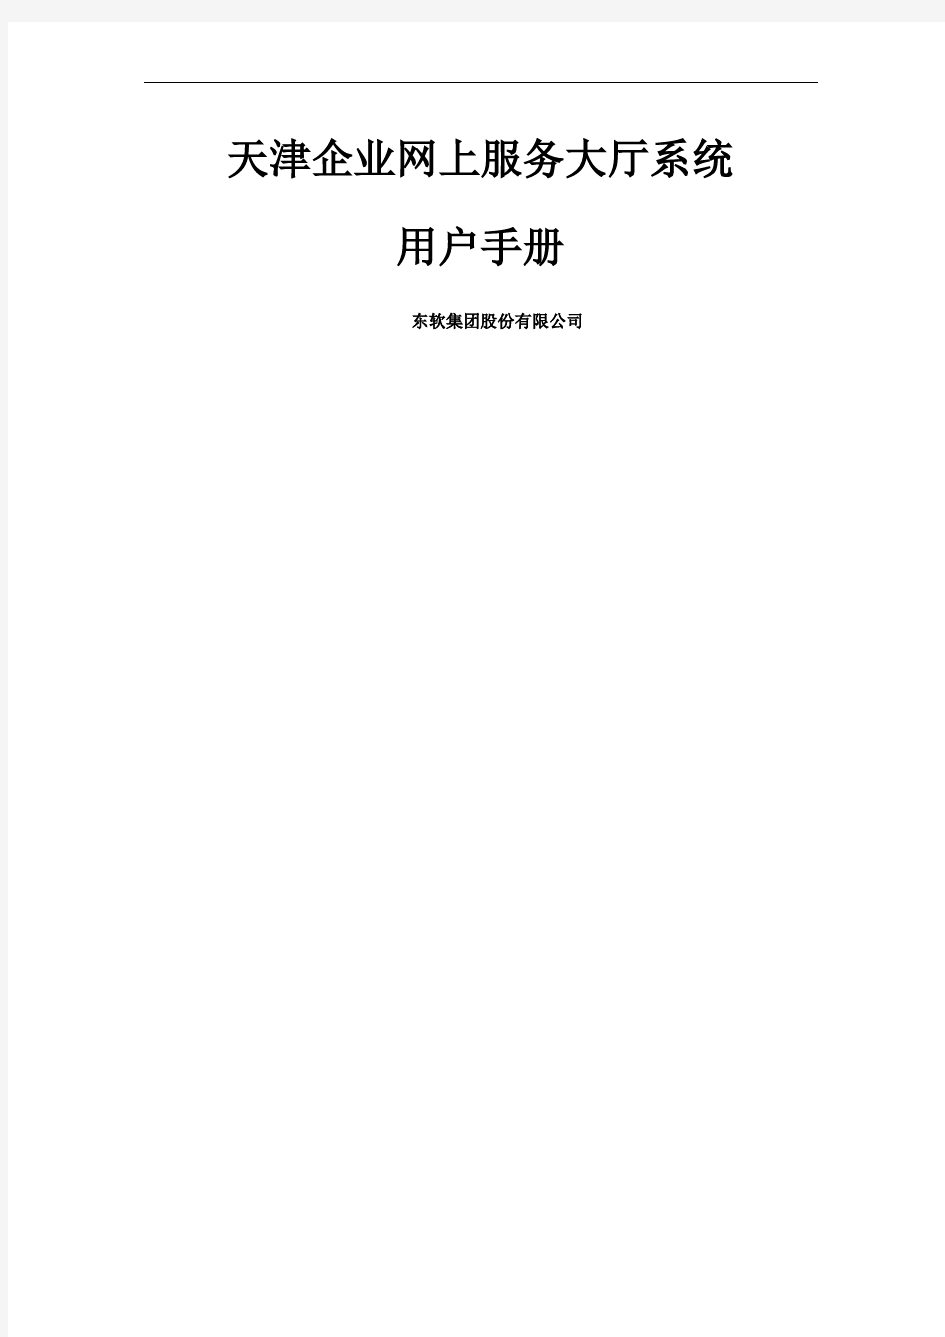 天津企业网上服务大厅系统用户手册